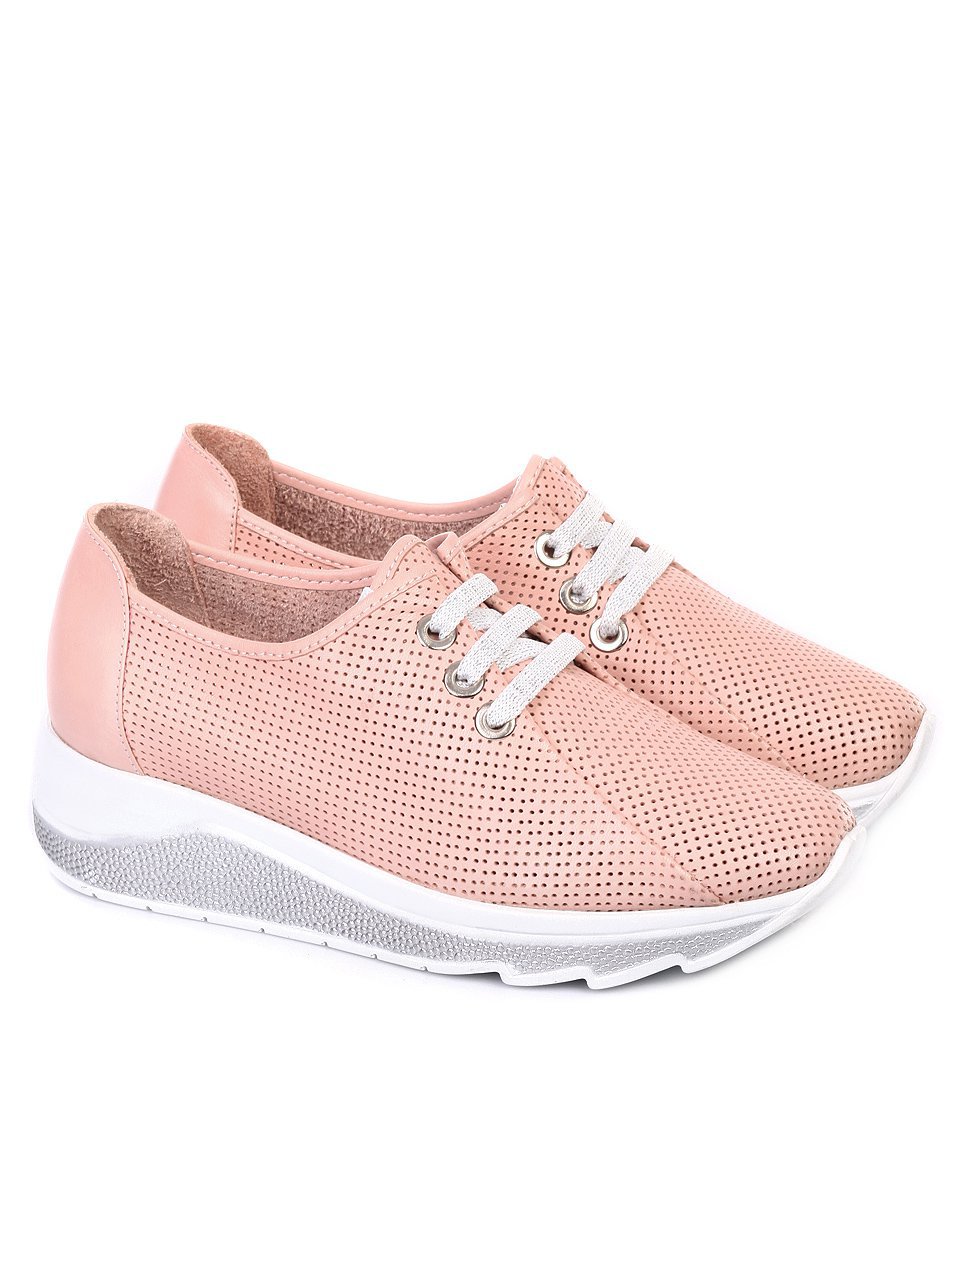 Ежедневни дамски обувки от естествена кожа 3AT-18506 pink